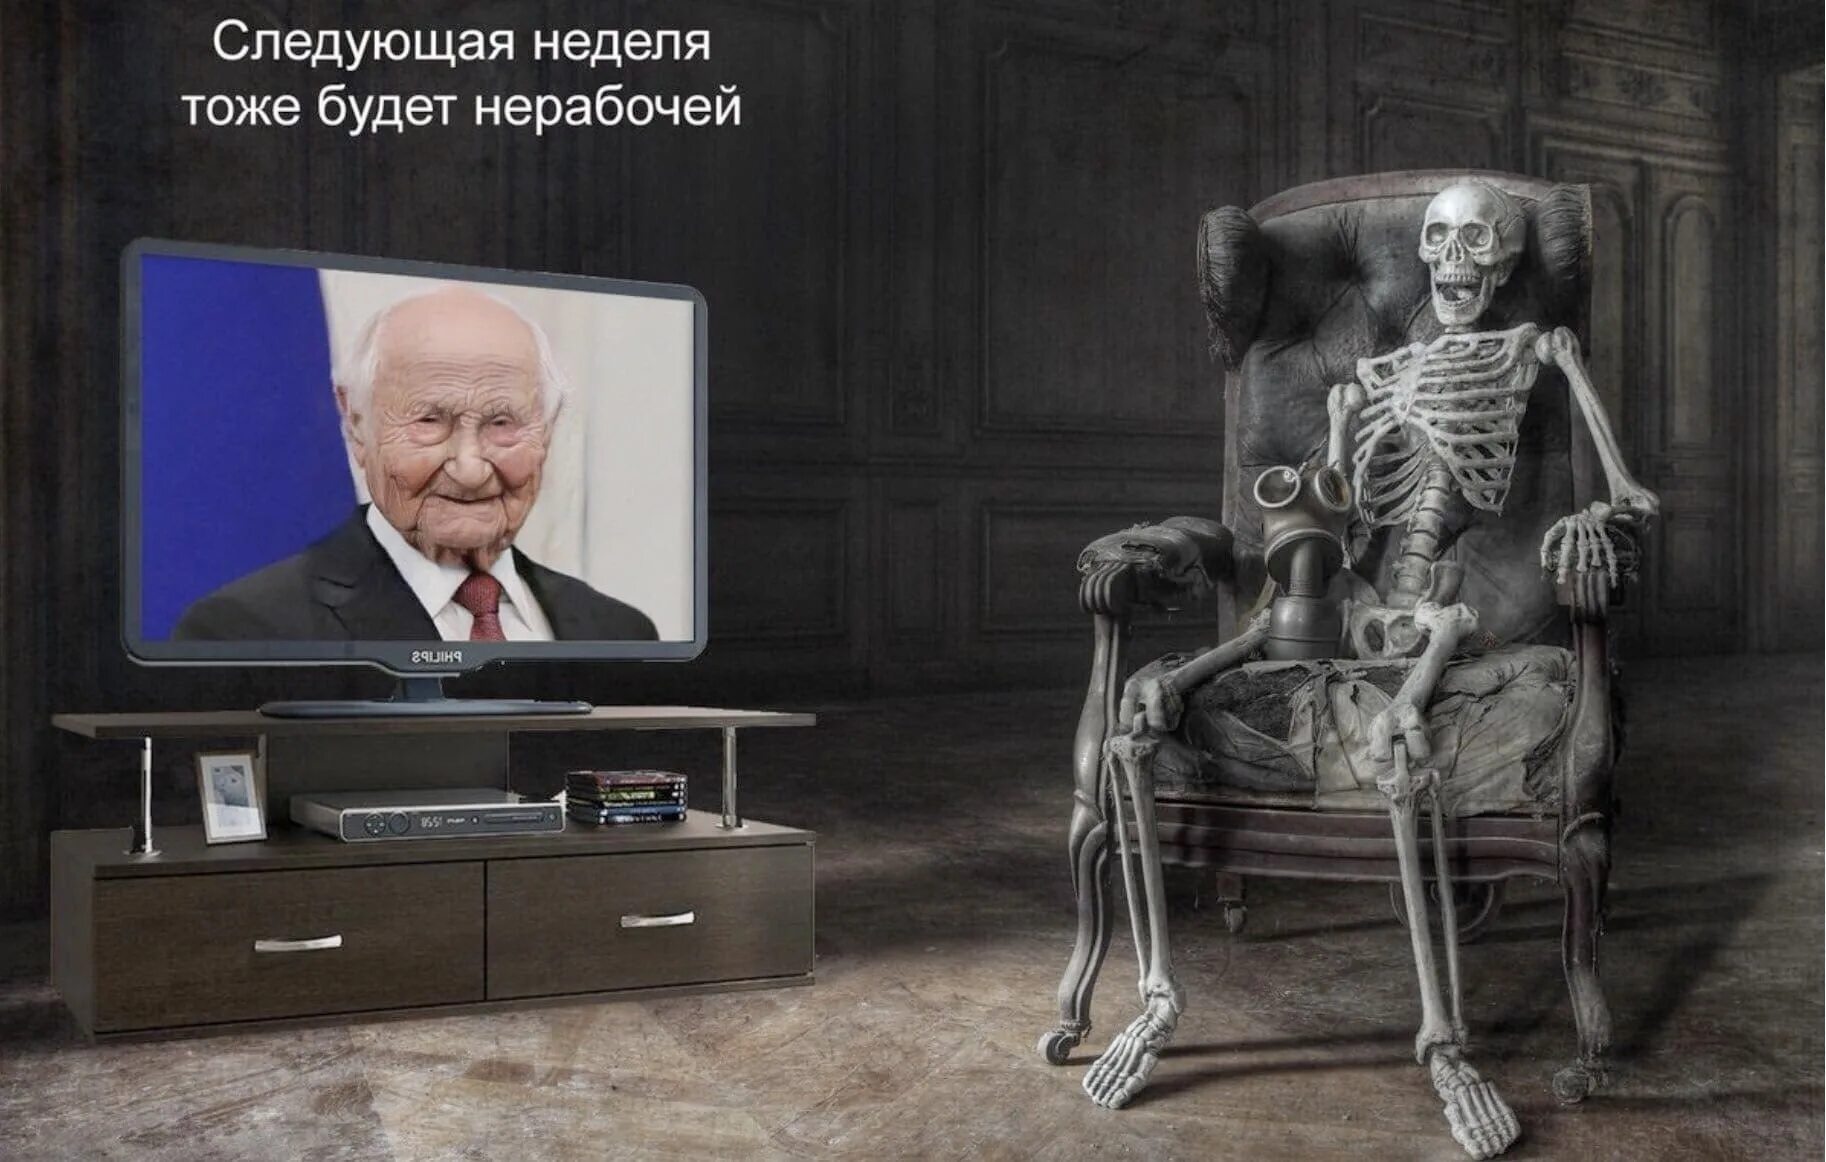 Скелет у телевизора с Путиным. Тоже есть телевизор